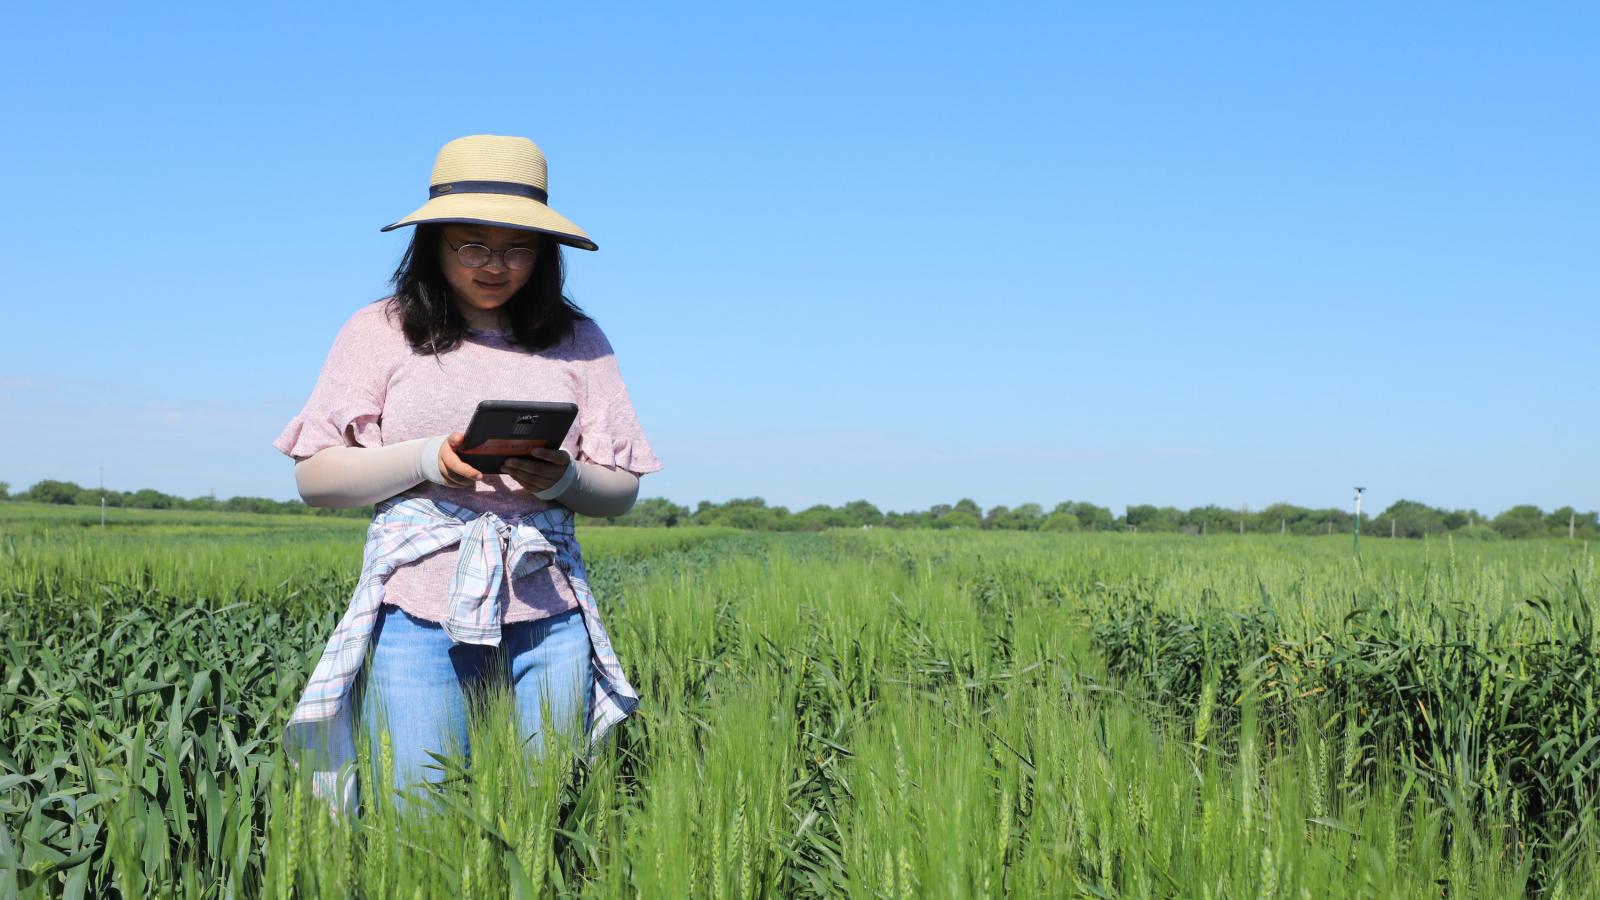 Fang Wang recording data in wheat field